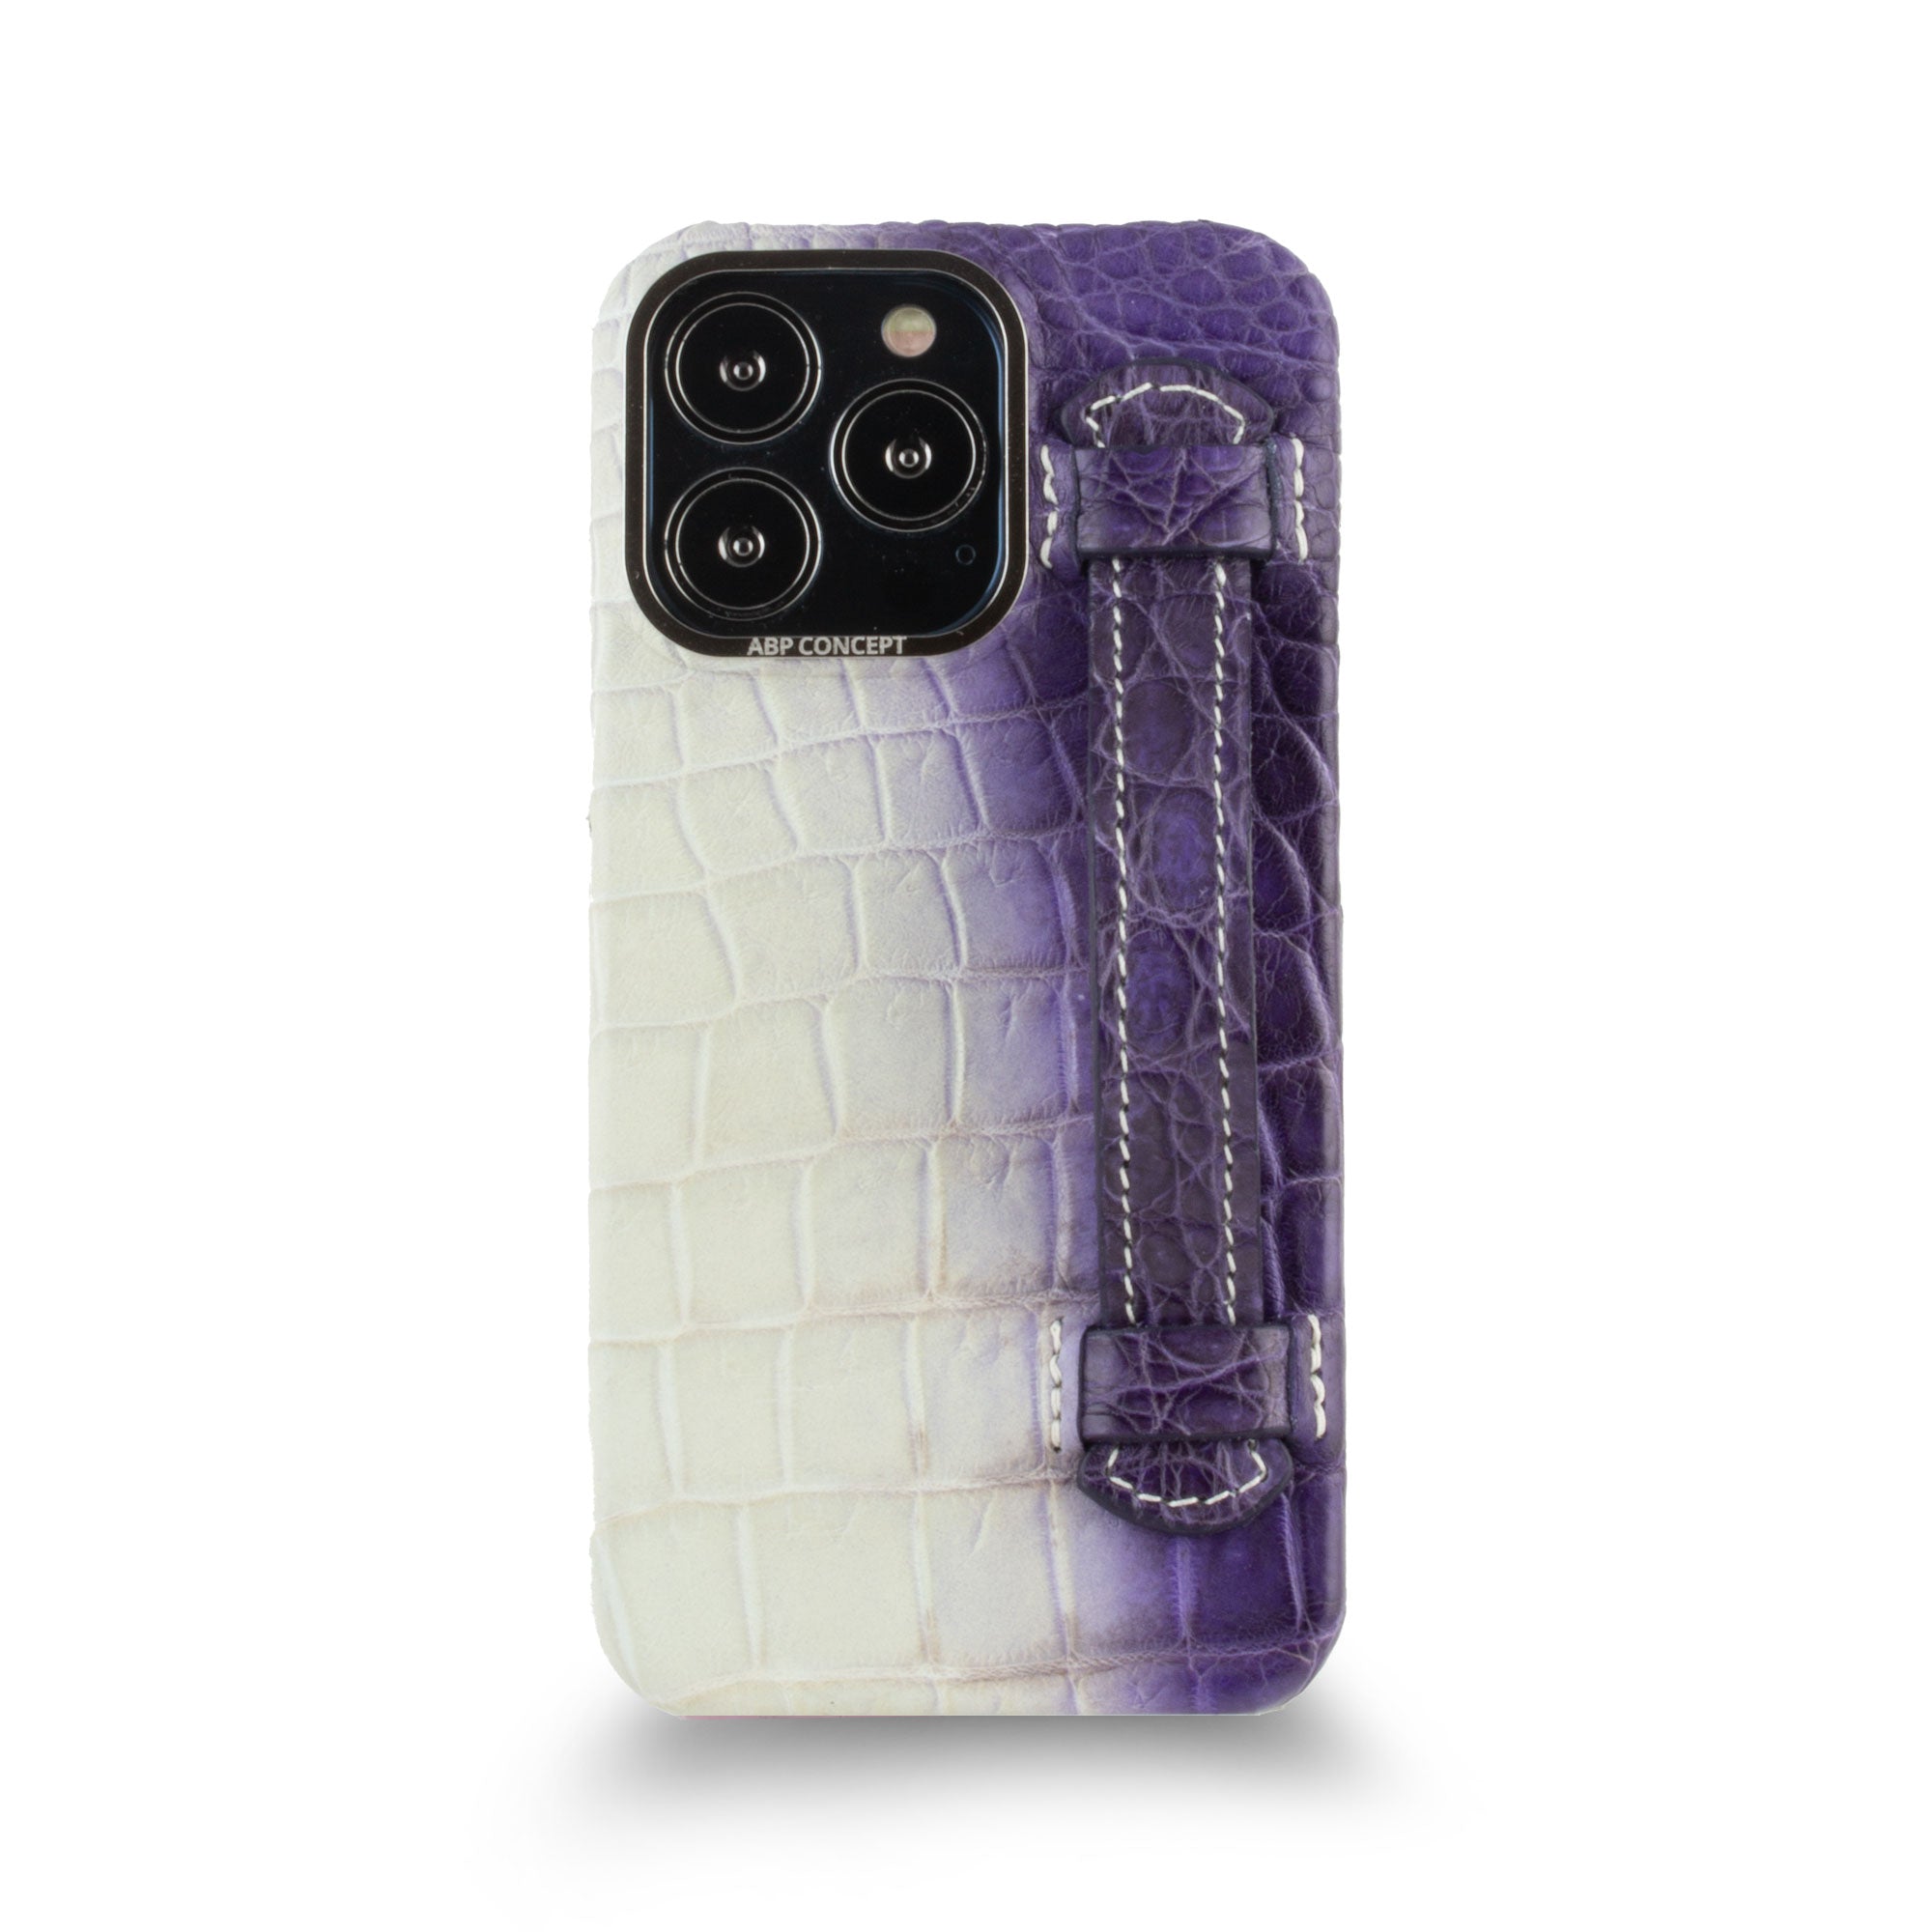 Vente exclusive - Coque cuir "strap case" Himalaya pour iPhone 13 Pro - Crocodile Himalaya violet